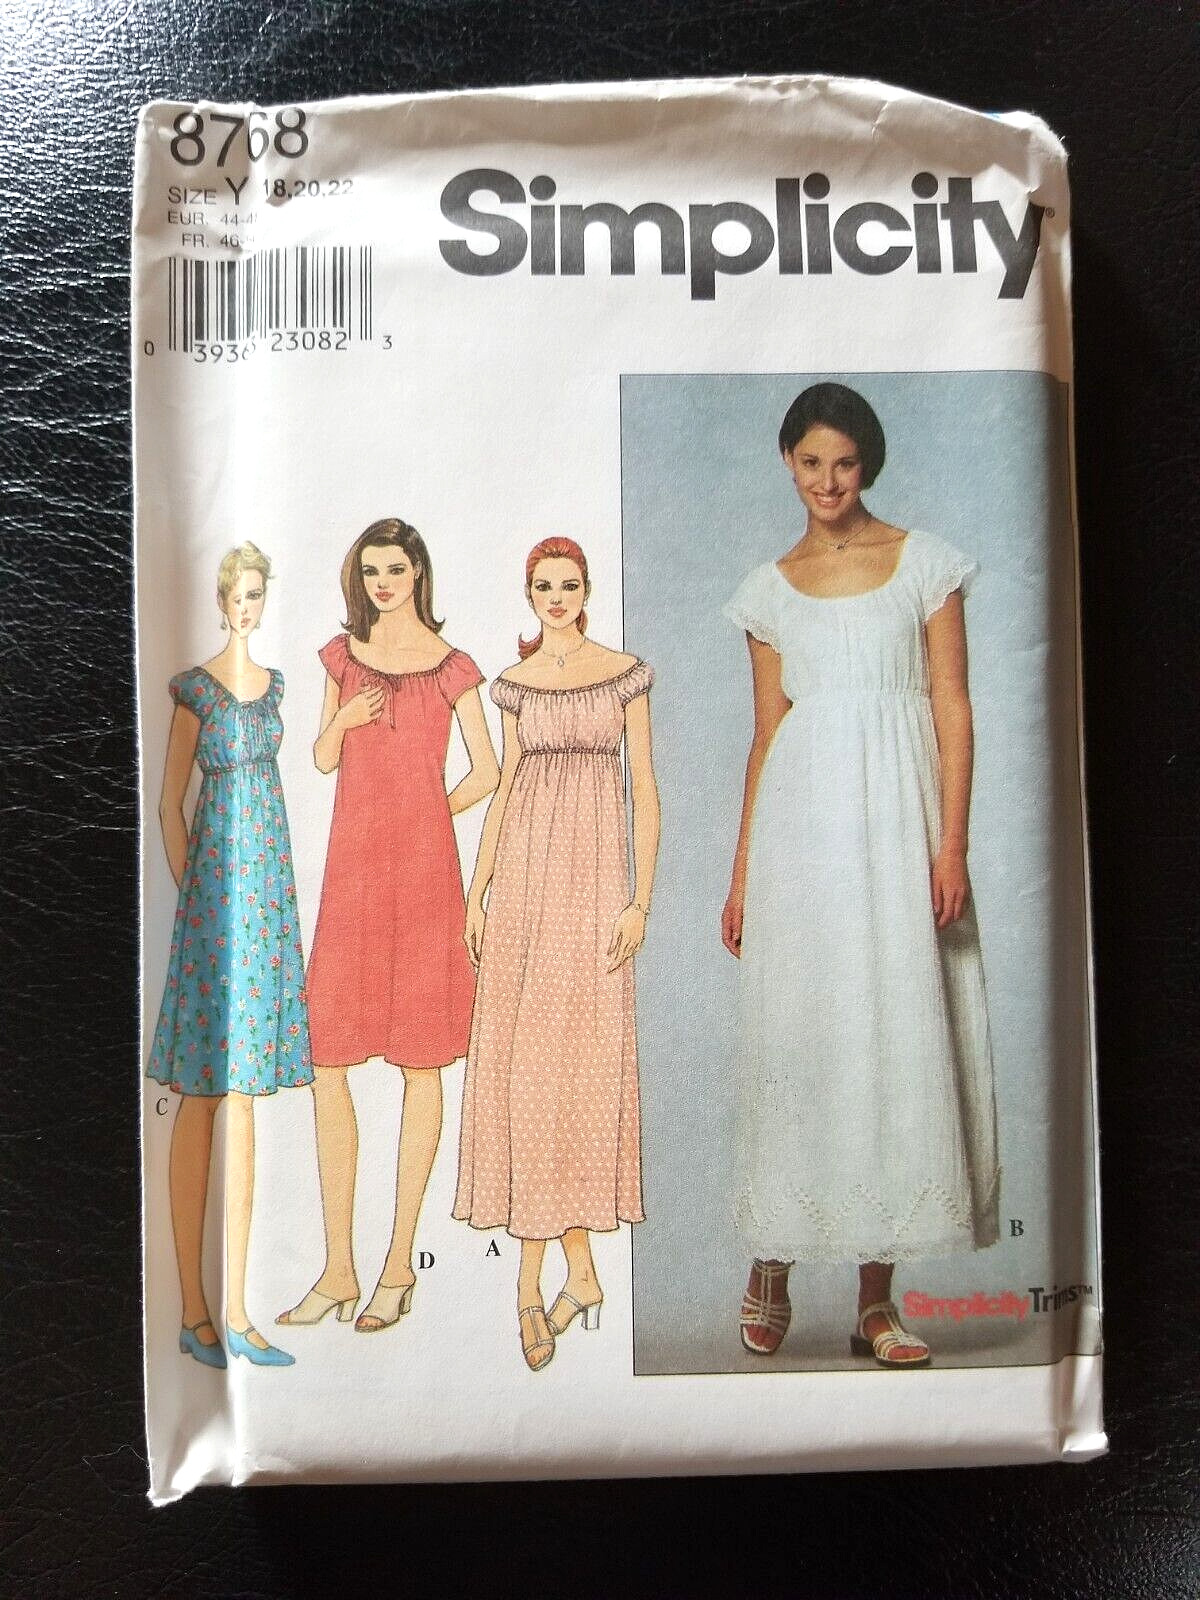 Simplicity 8768 Size Y 18-20-22 Sewing Pattern UNCUT Modern Regency Dress Gown